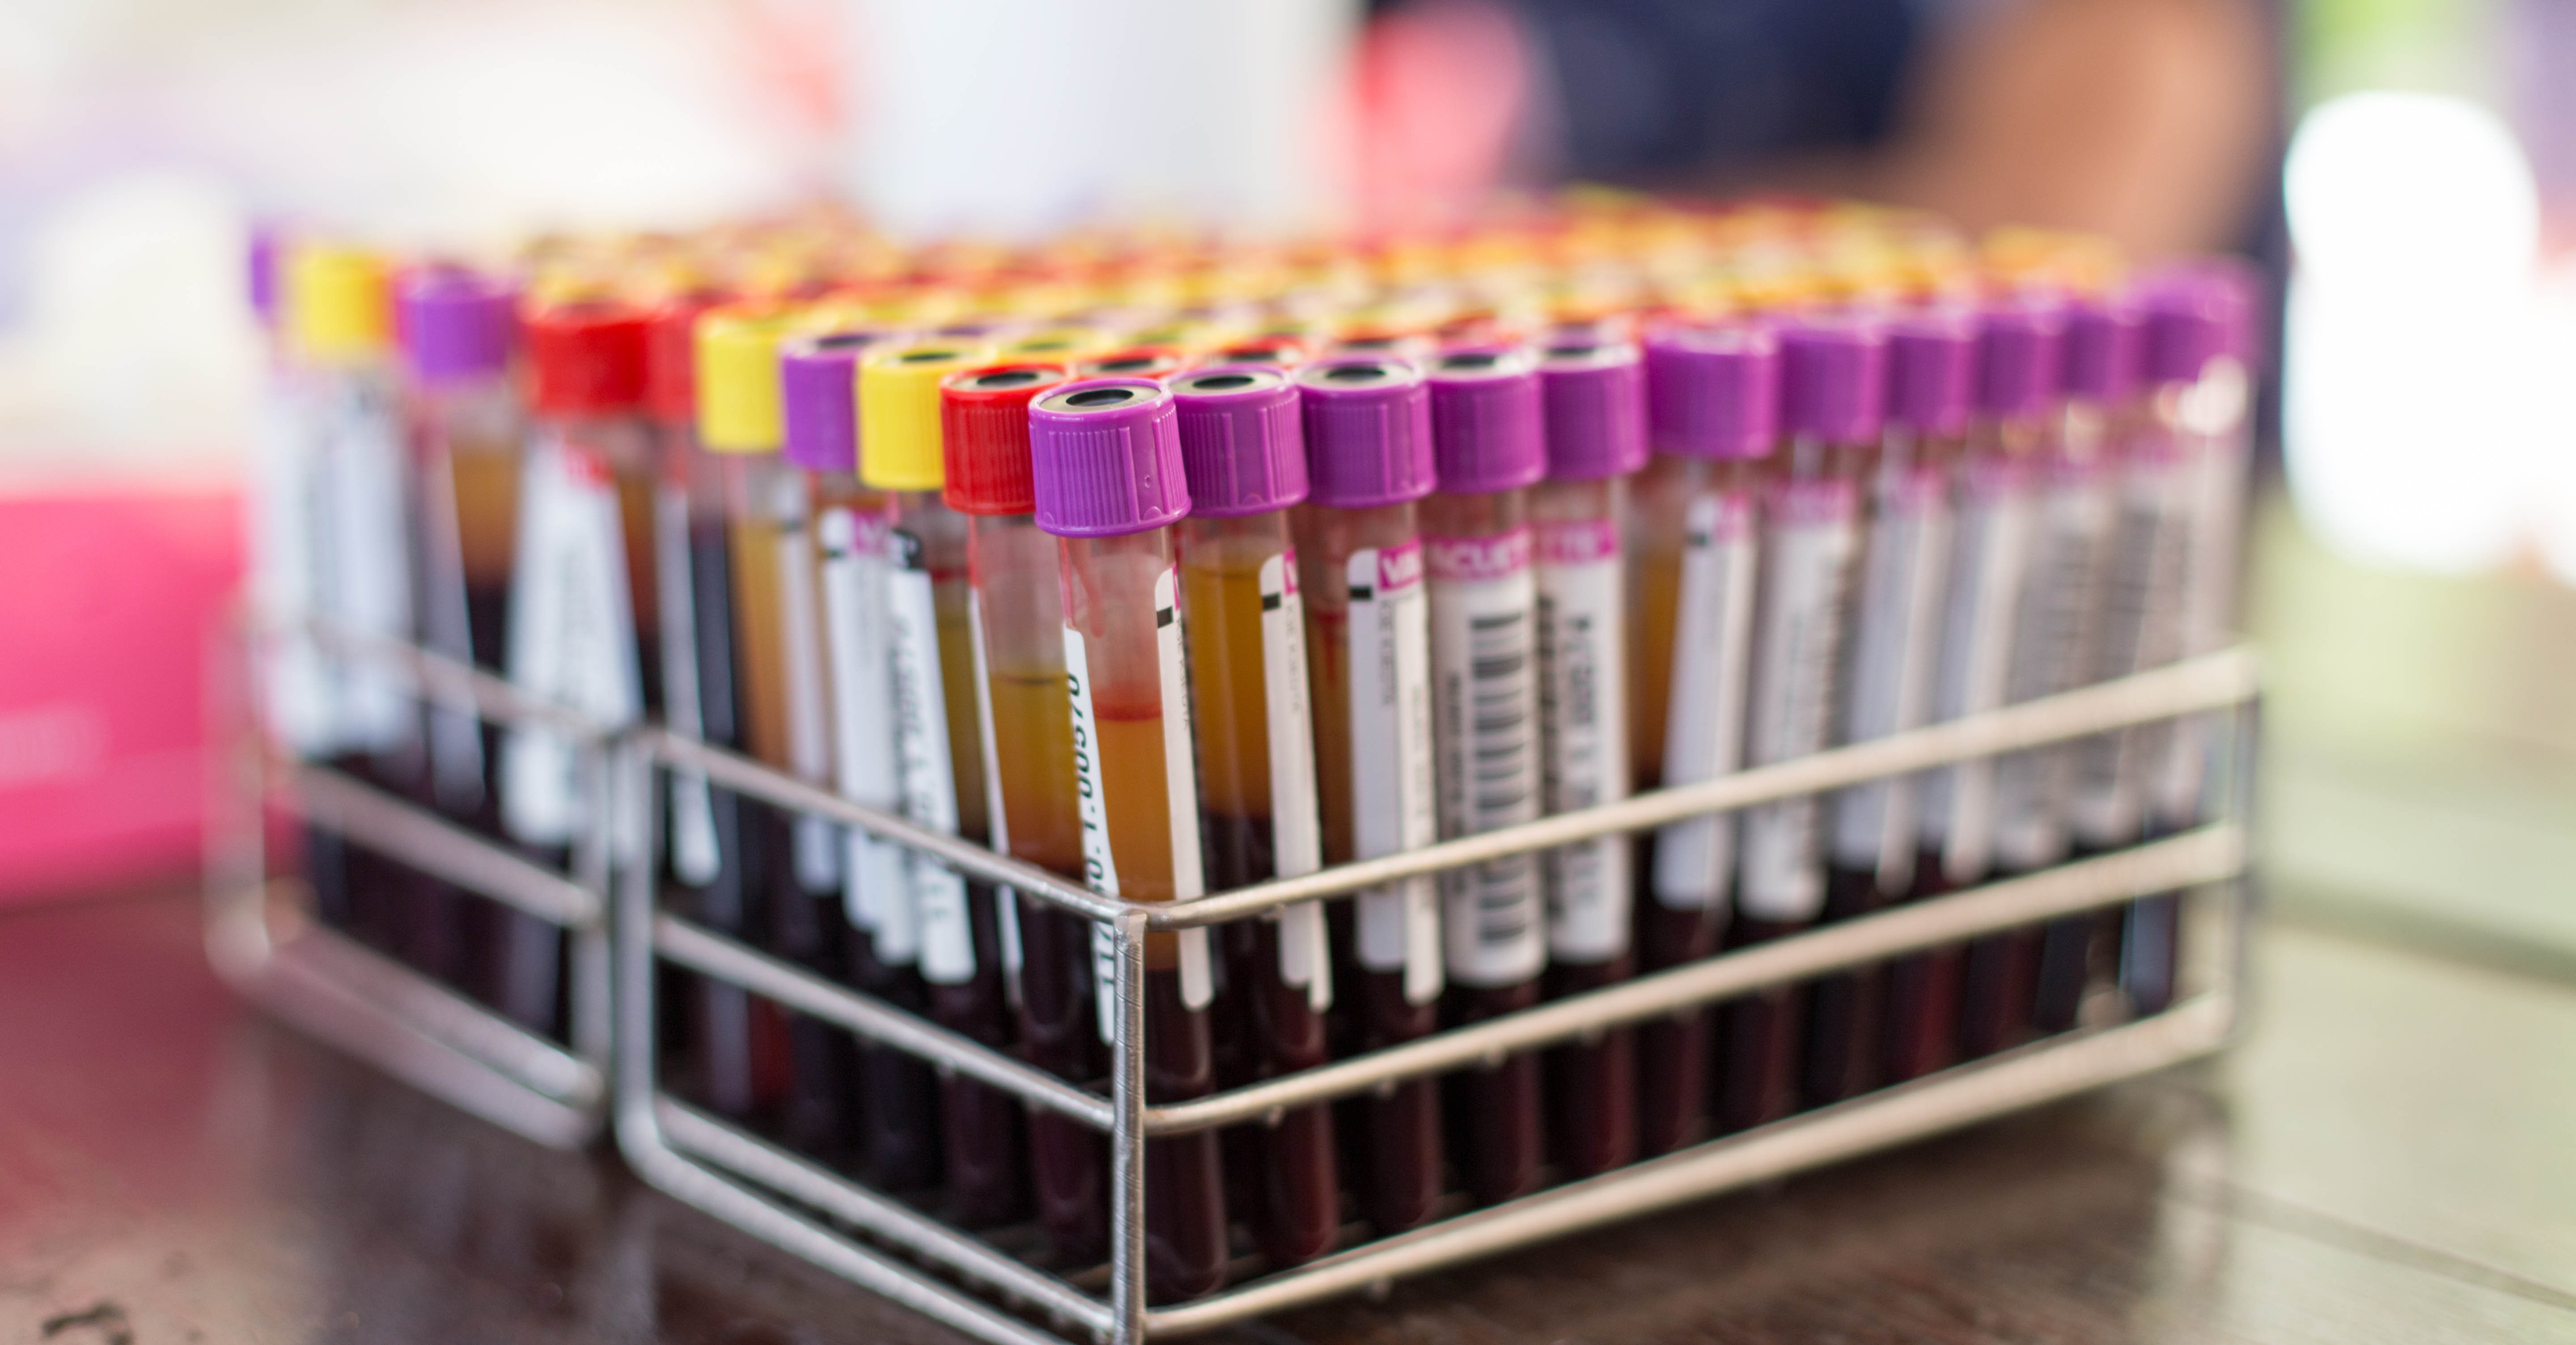 Test tubes of blood samples.